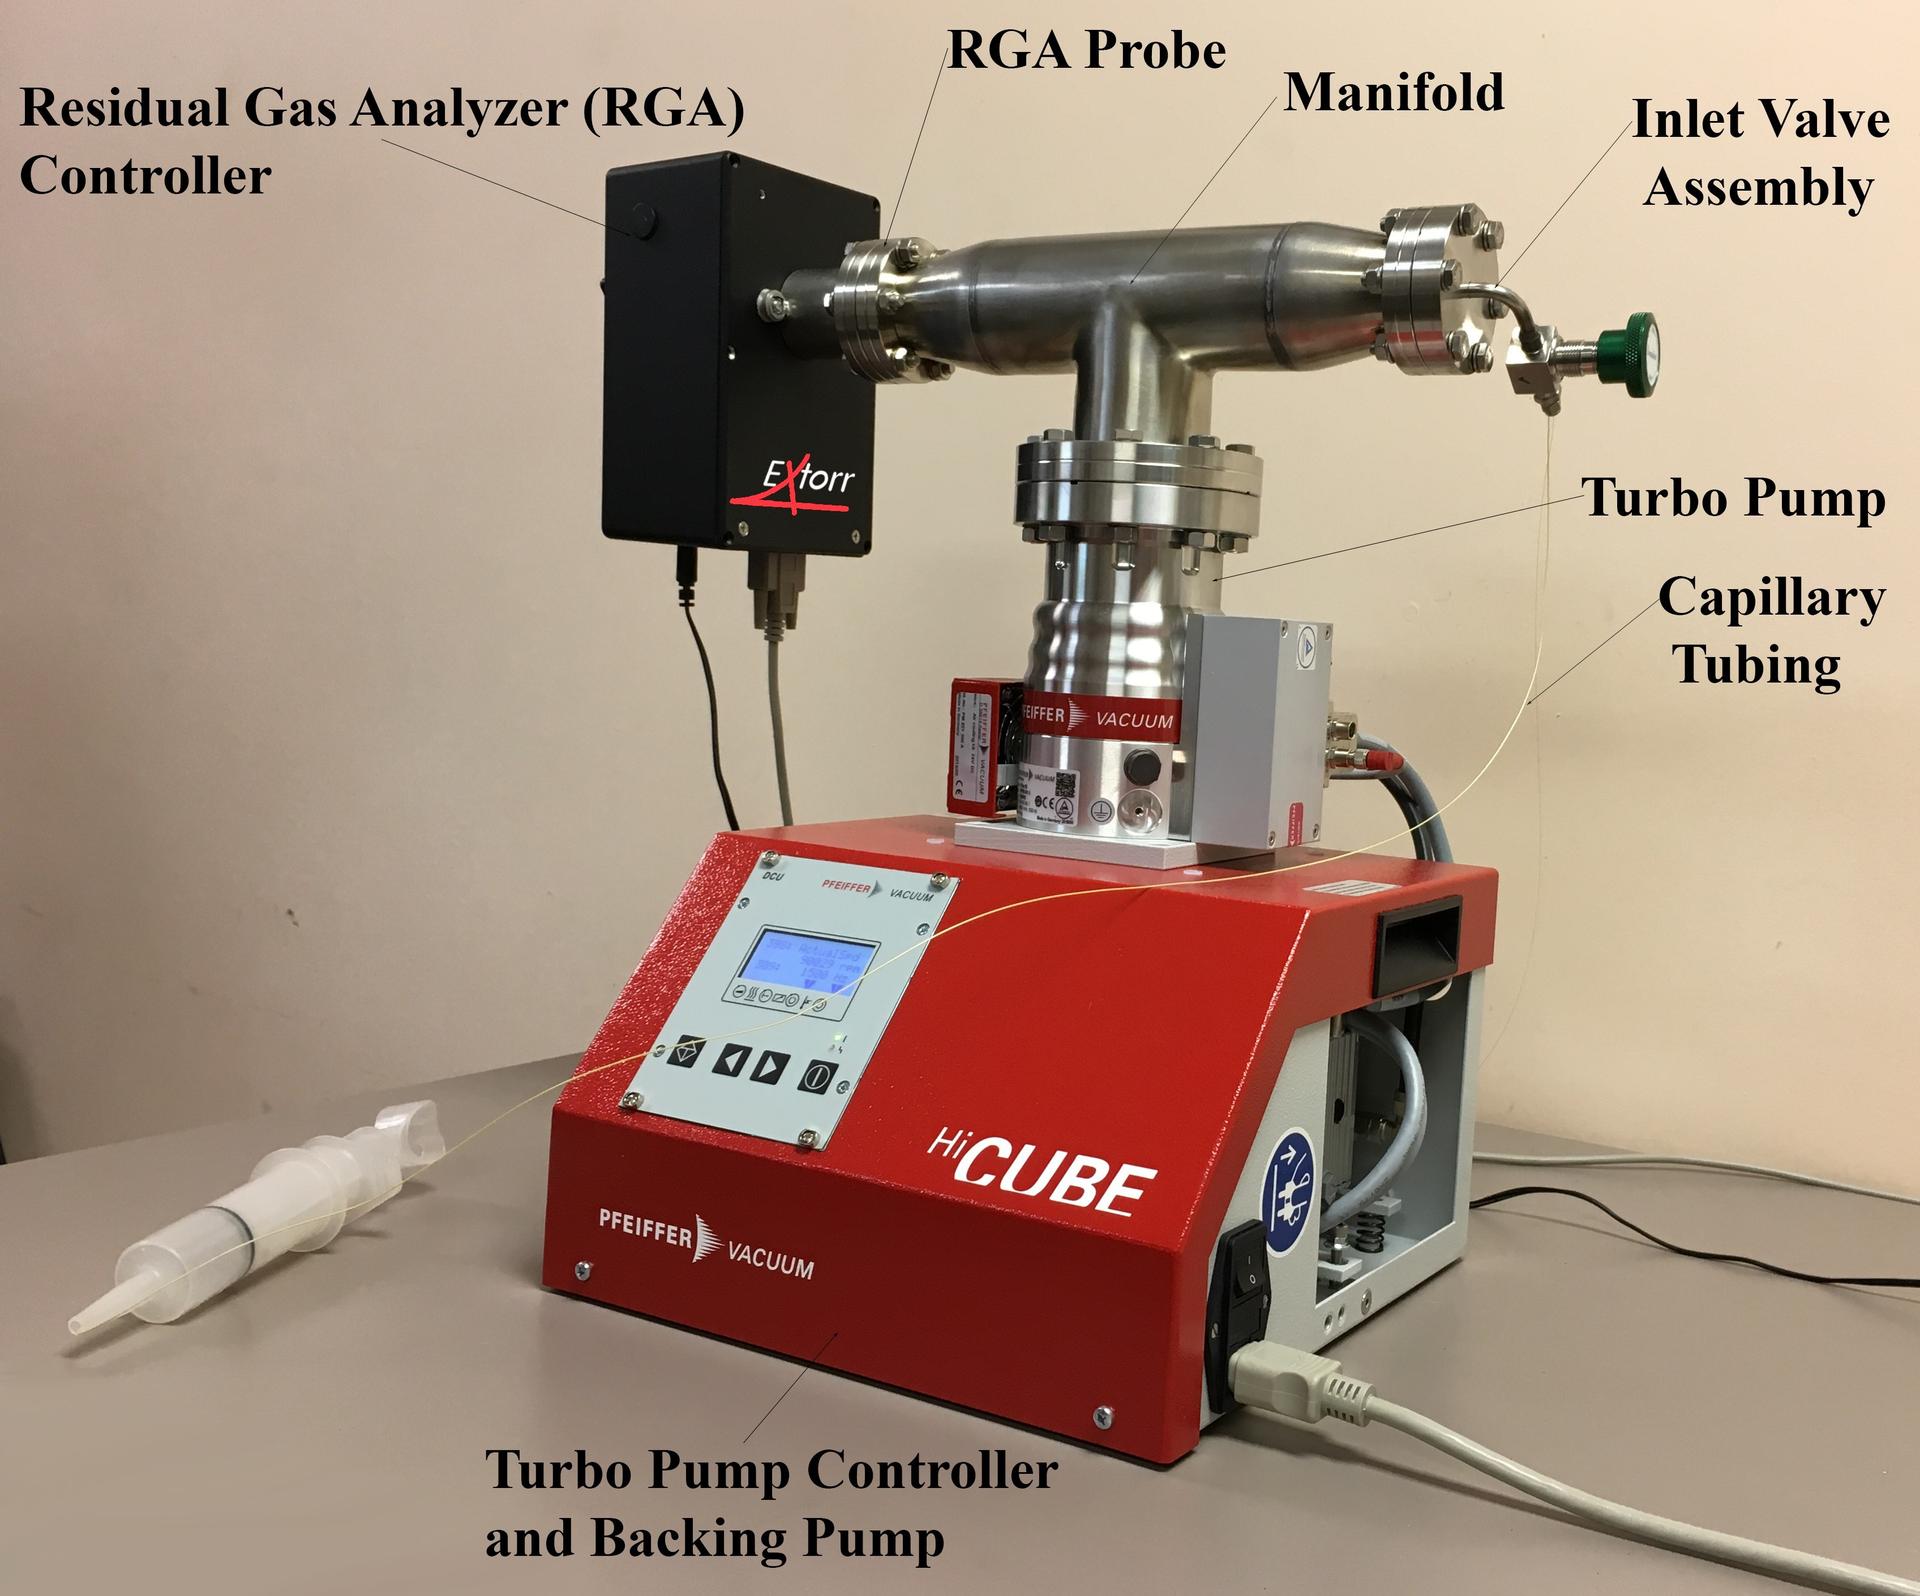 example residual gas analyzer system